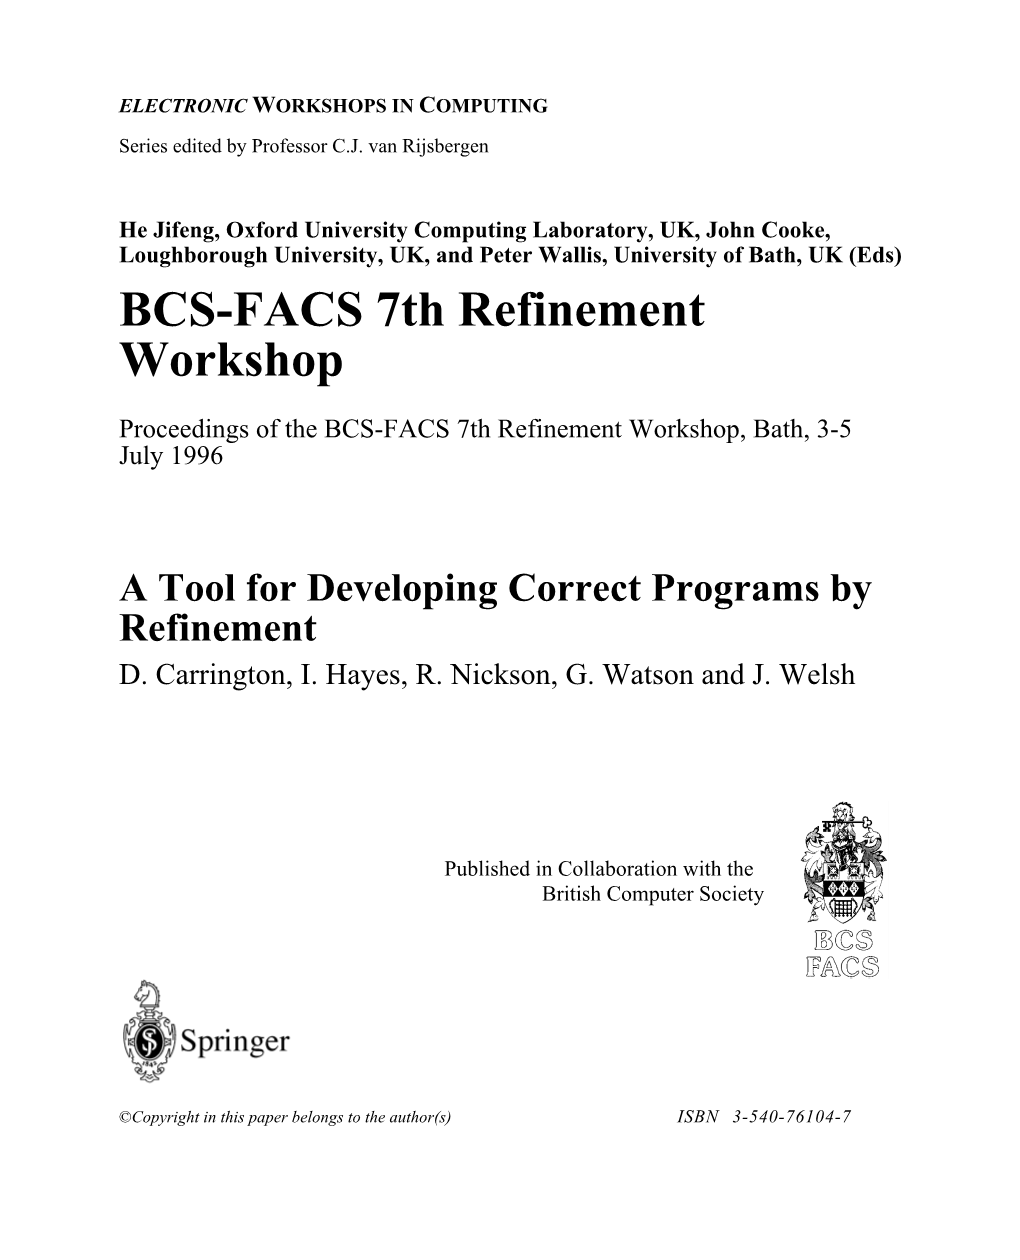 BCS-FACS 7Th Refinement Workshop